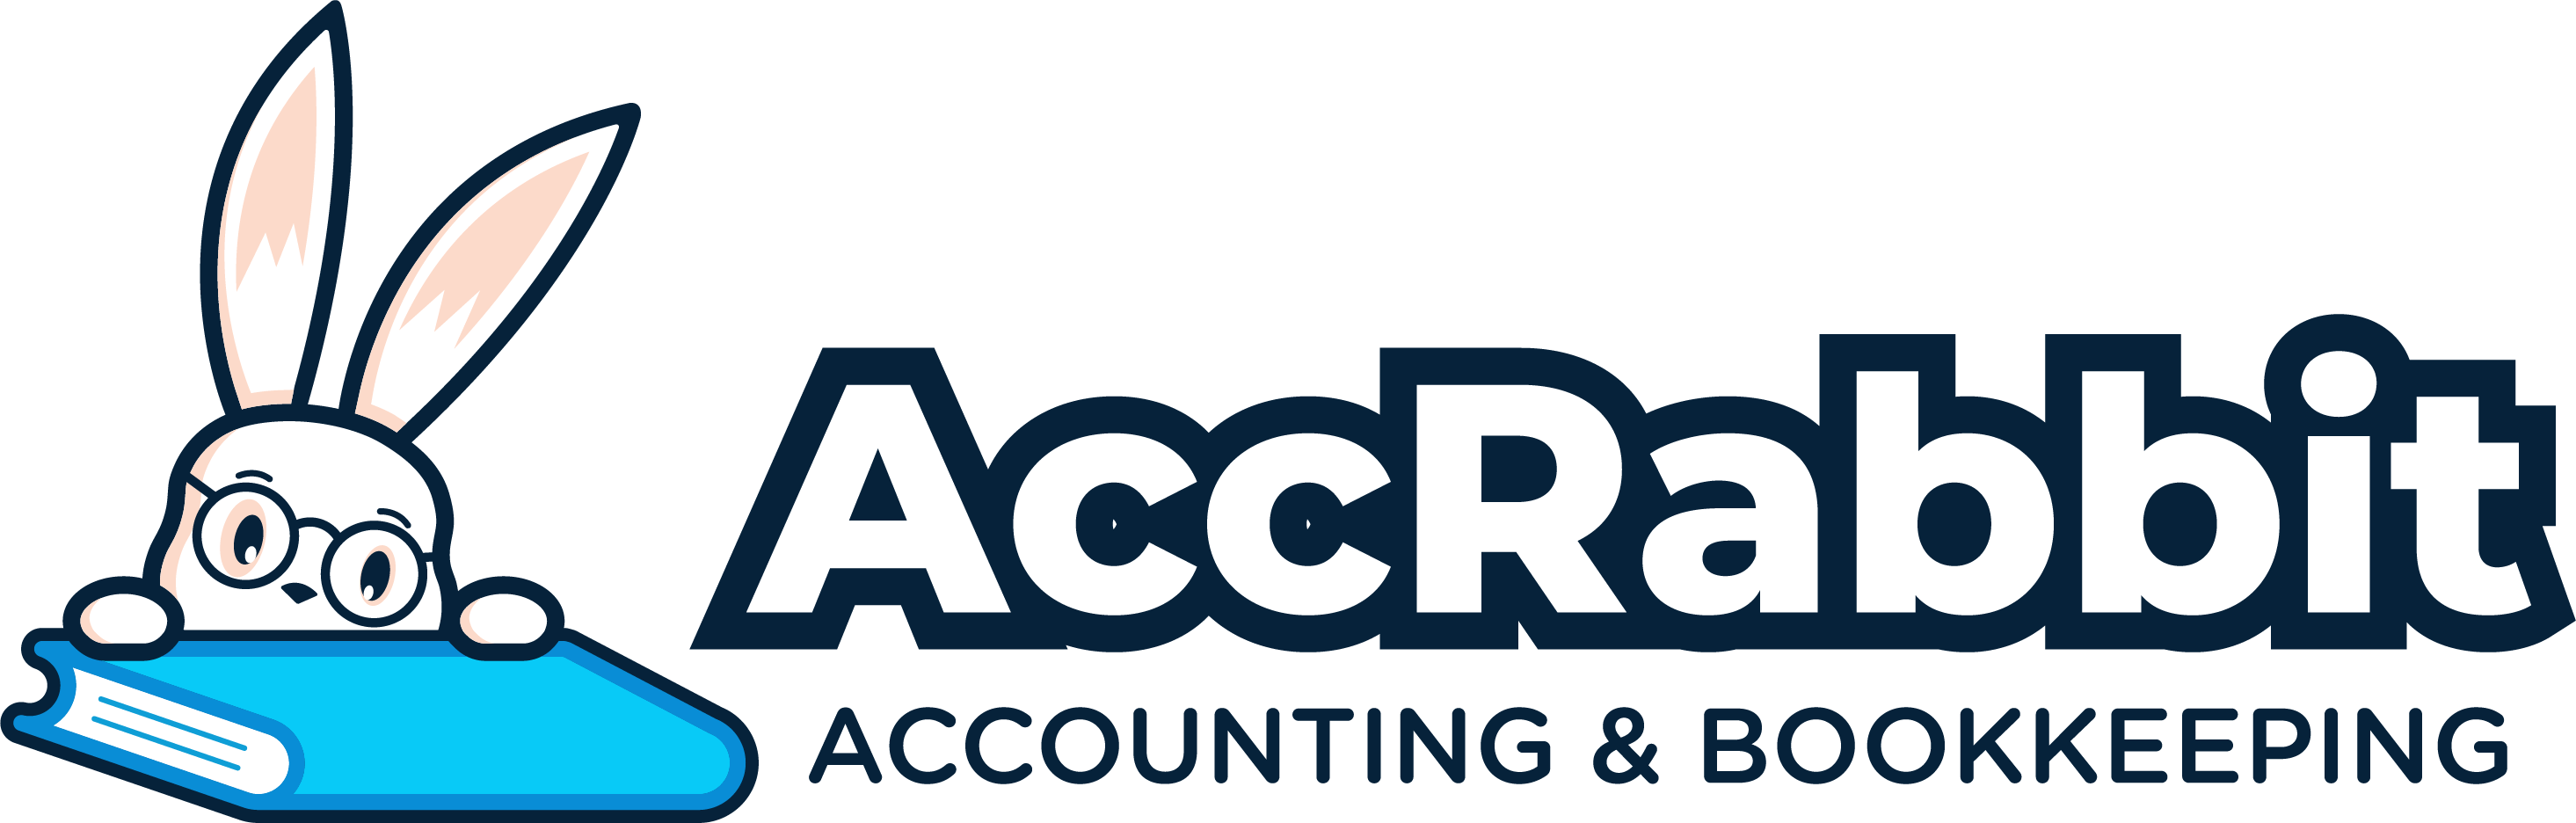 AccRabbit Logo